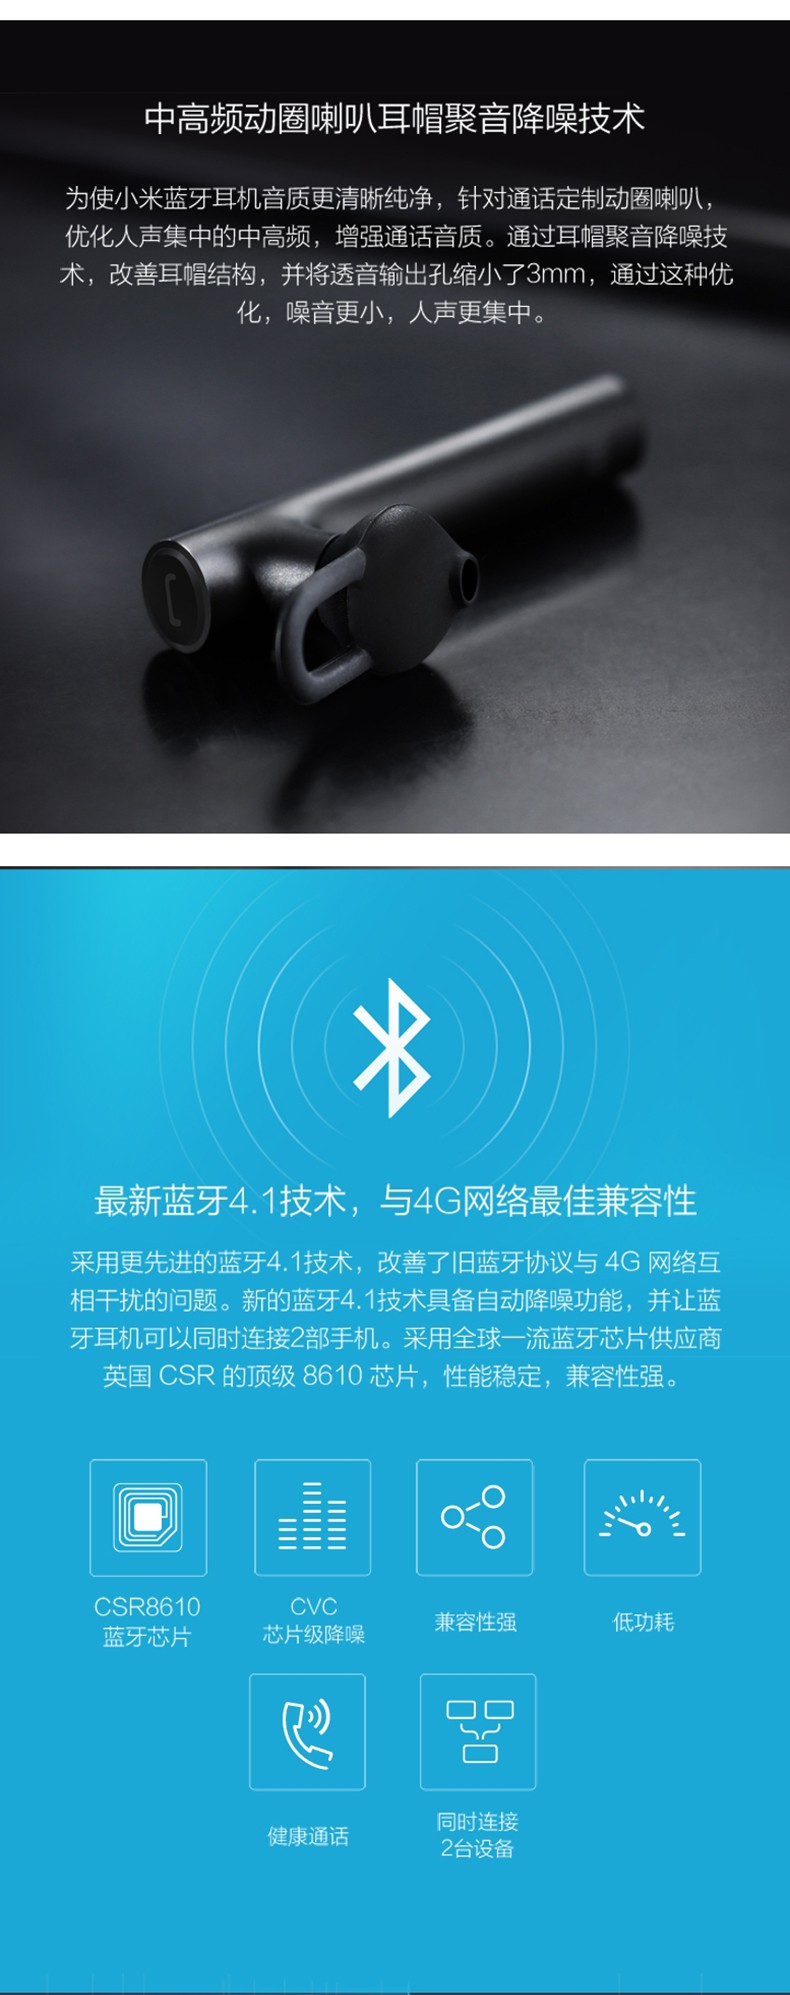 MI 小米蓝牙耳机 蓝牙4.1高清通话音质 兼容苹果6/5S